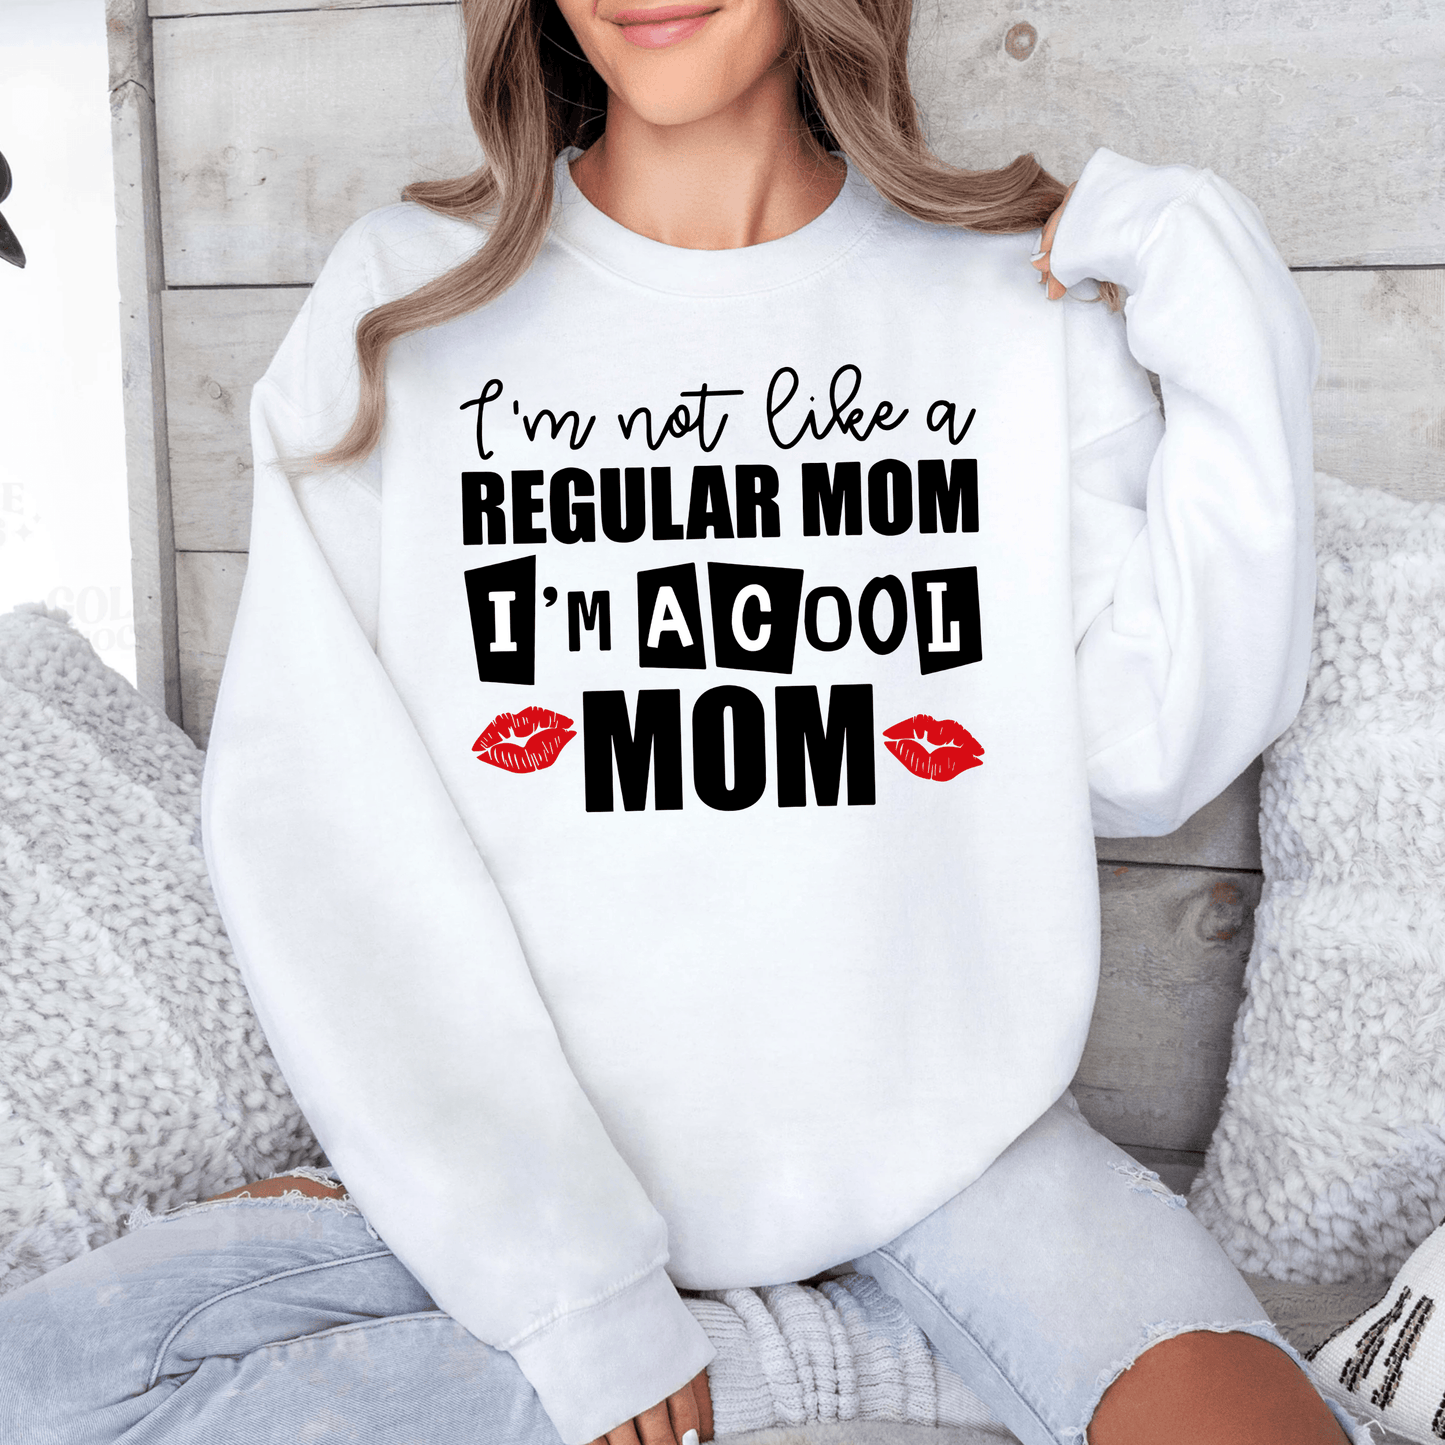 Stylisches 'Coole Mama' Sweatshirt - Ideal für Freizeit - Mit Witzigem Spruch - GiftHaus